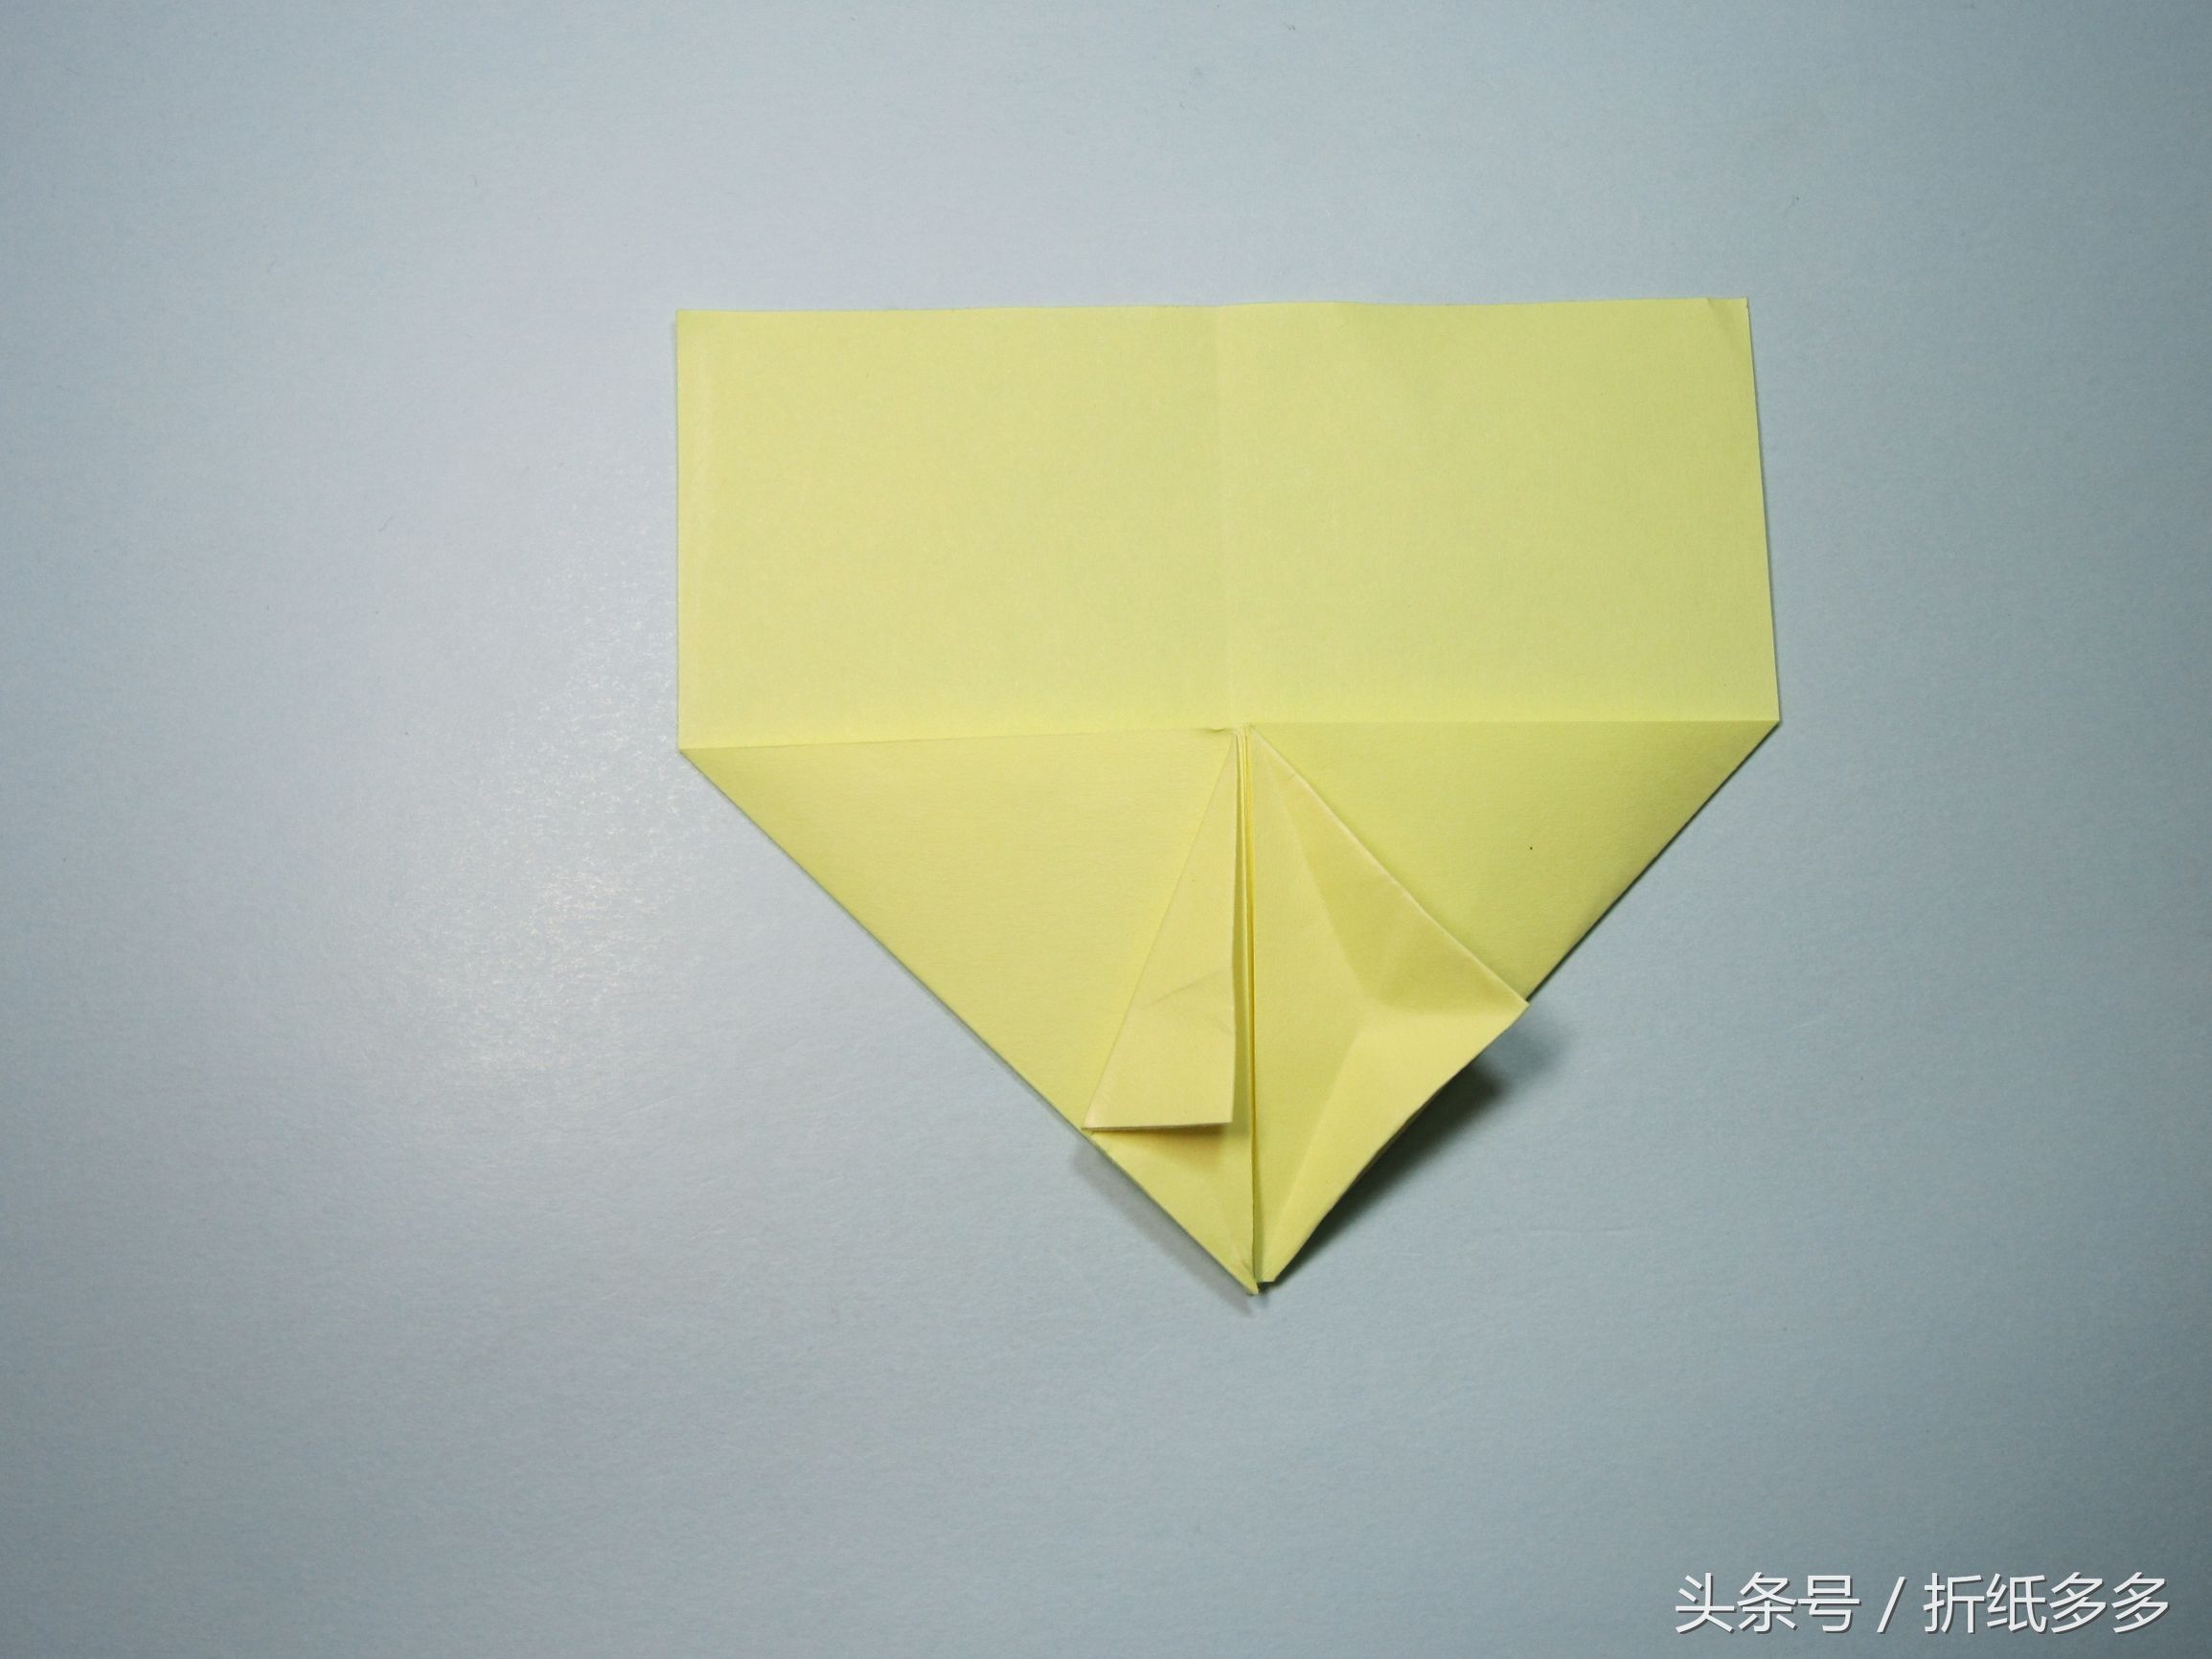 折纸飞得久的飞机步骤图解 2分钟学会简单的纸飞机折纸教程